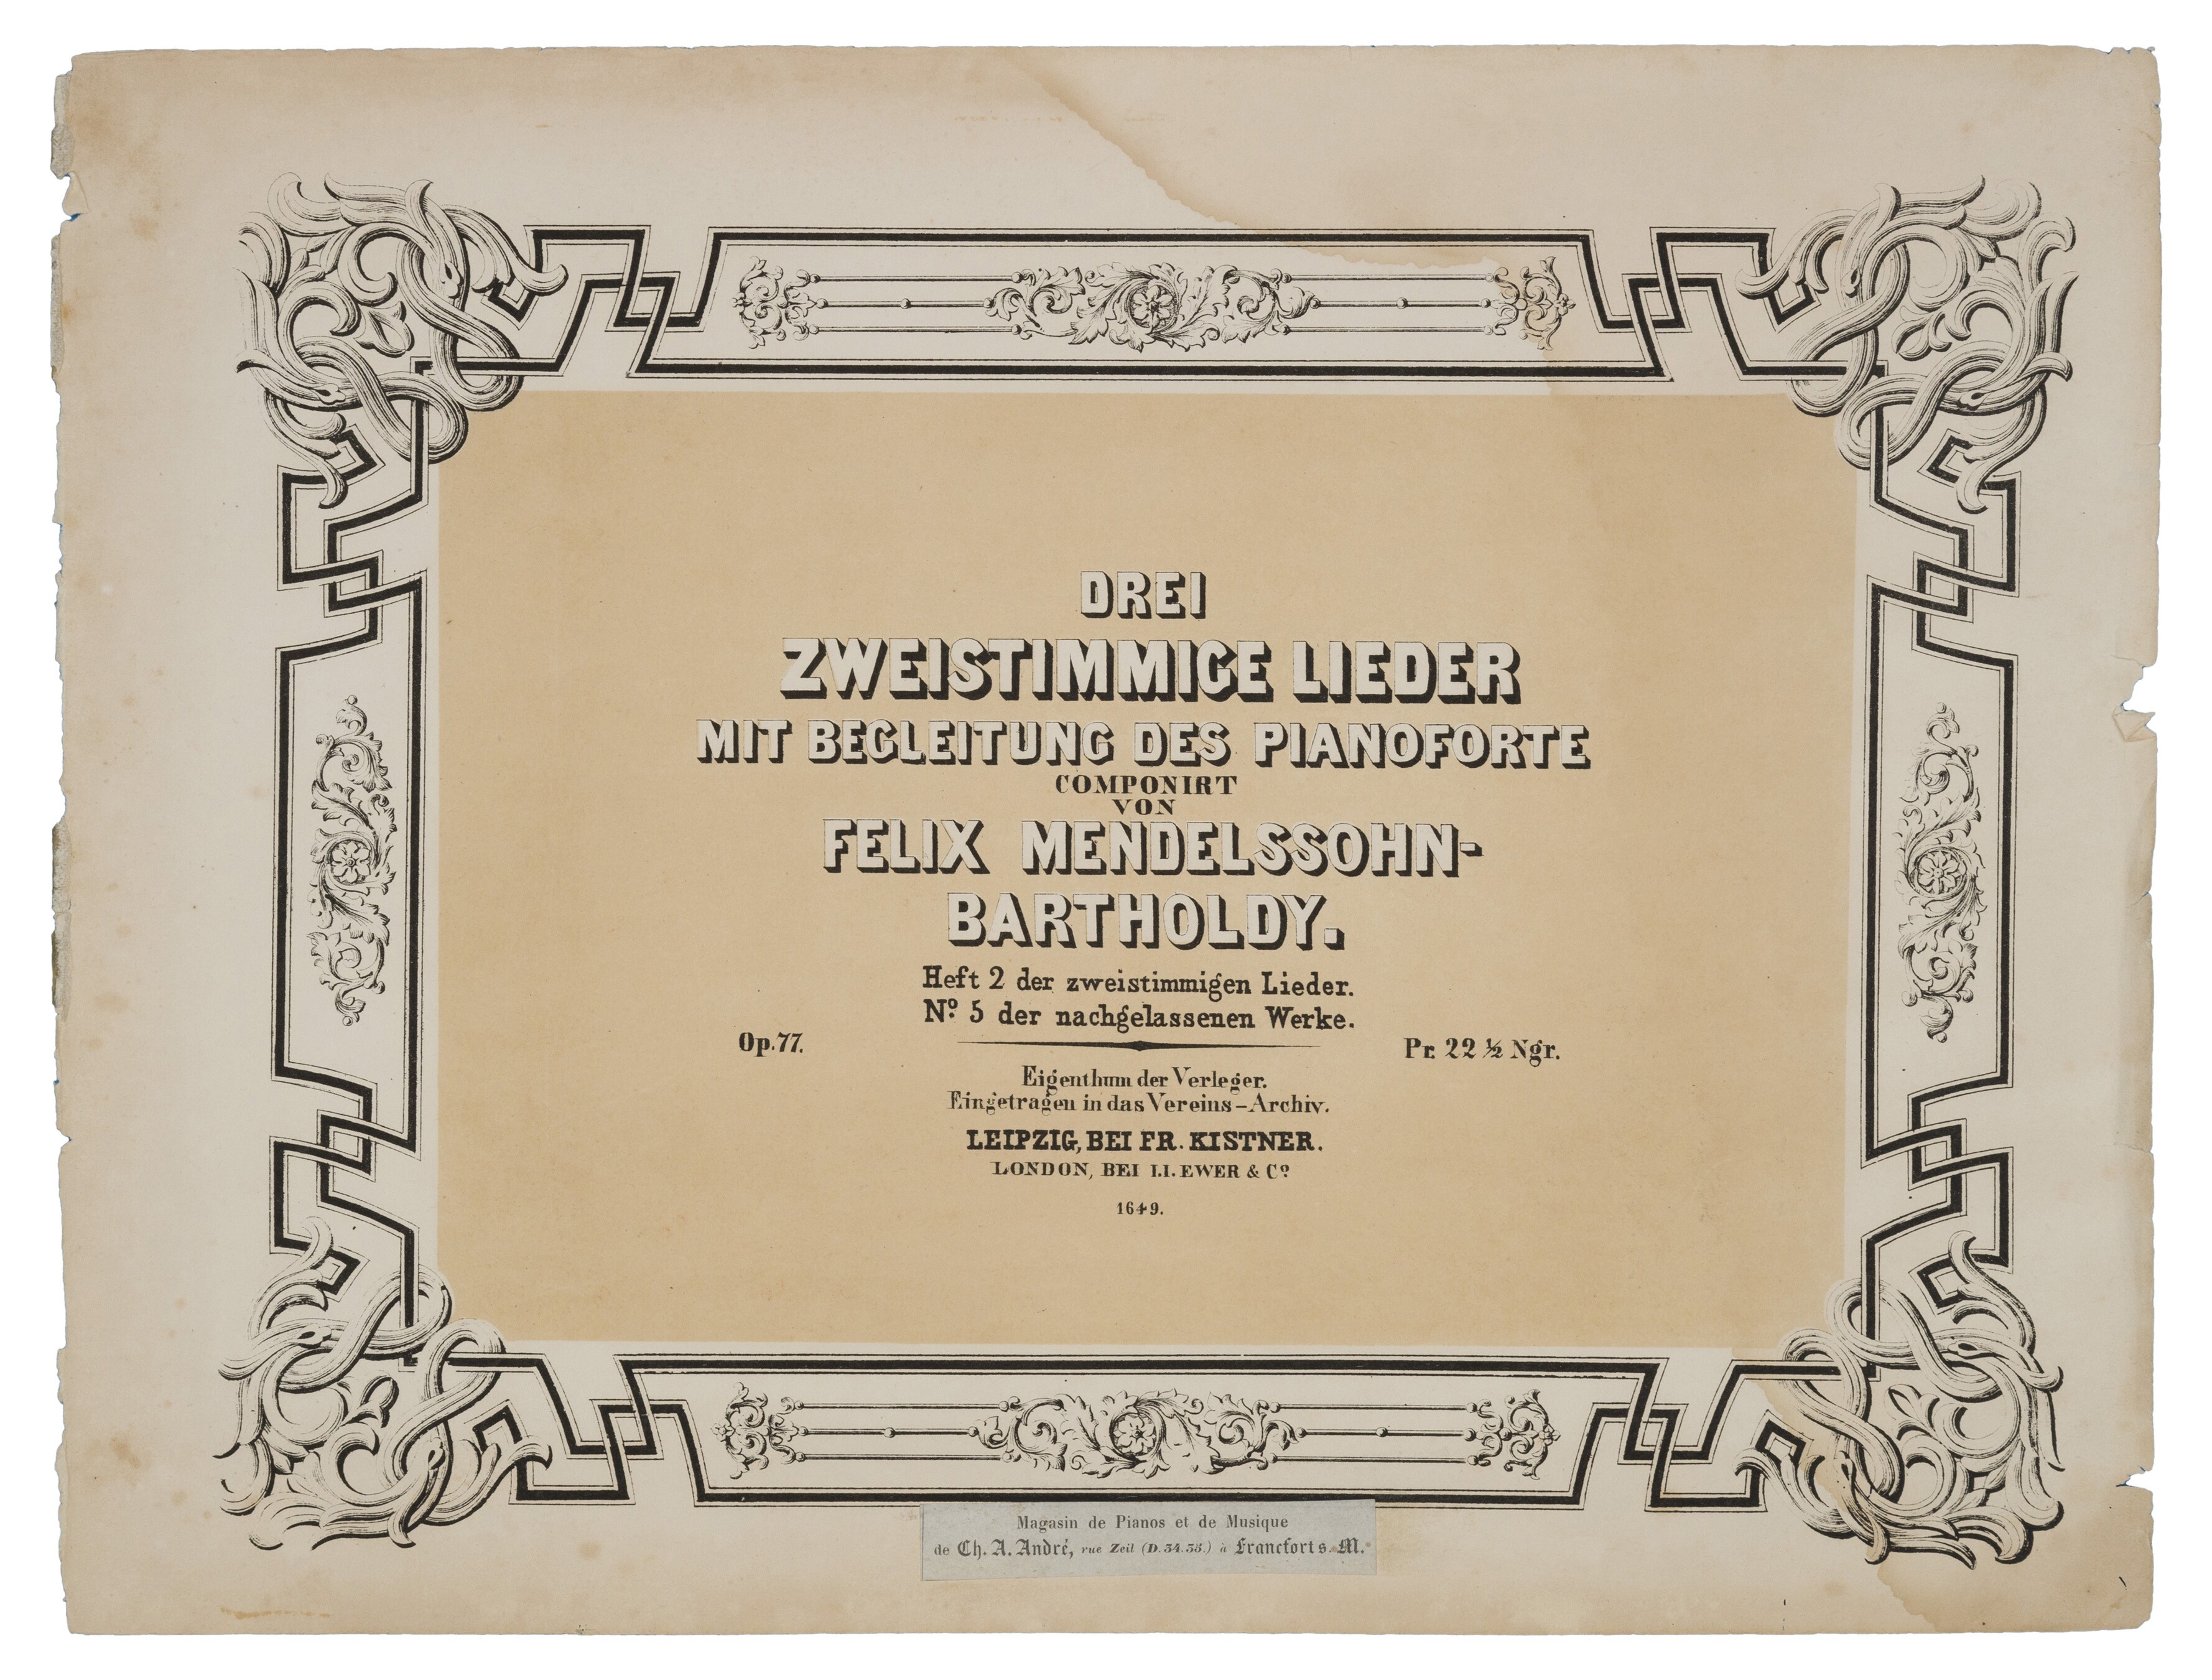 Felix Mendelssohn Bartholdy, Drei Lieder für zwei Singstimmen und Klavier op. 78 (Felix-Mendelssohn-Bartholdy-Stiftung RR-F)